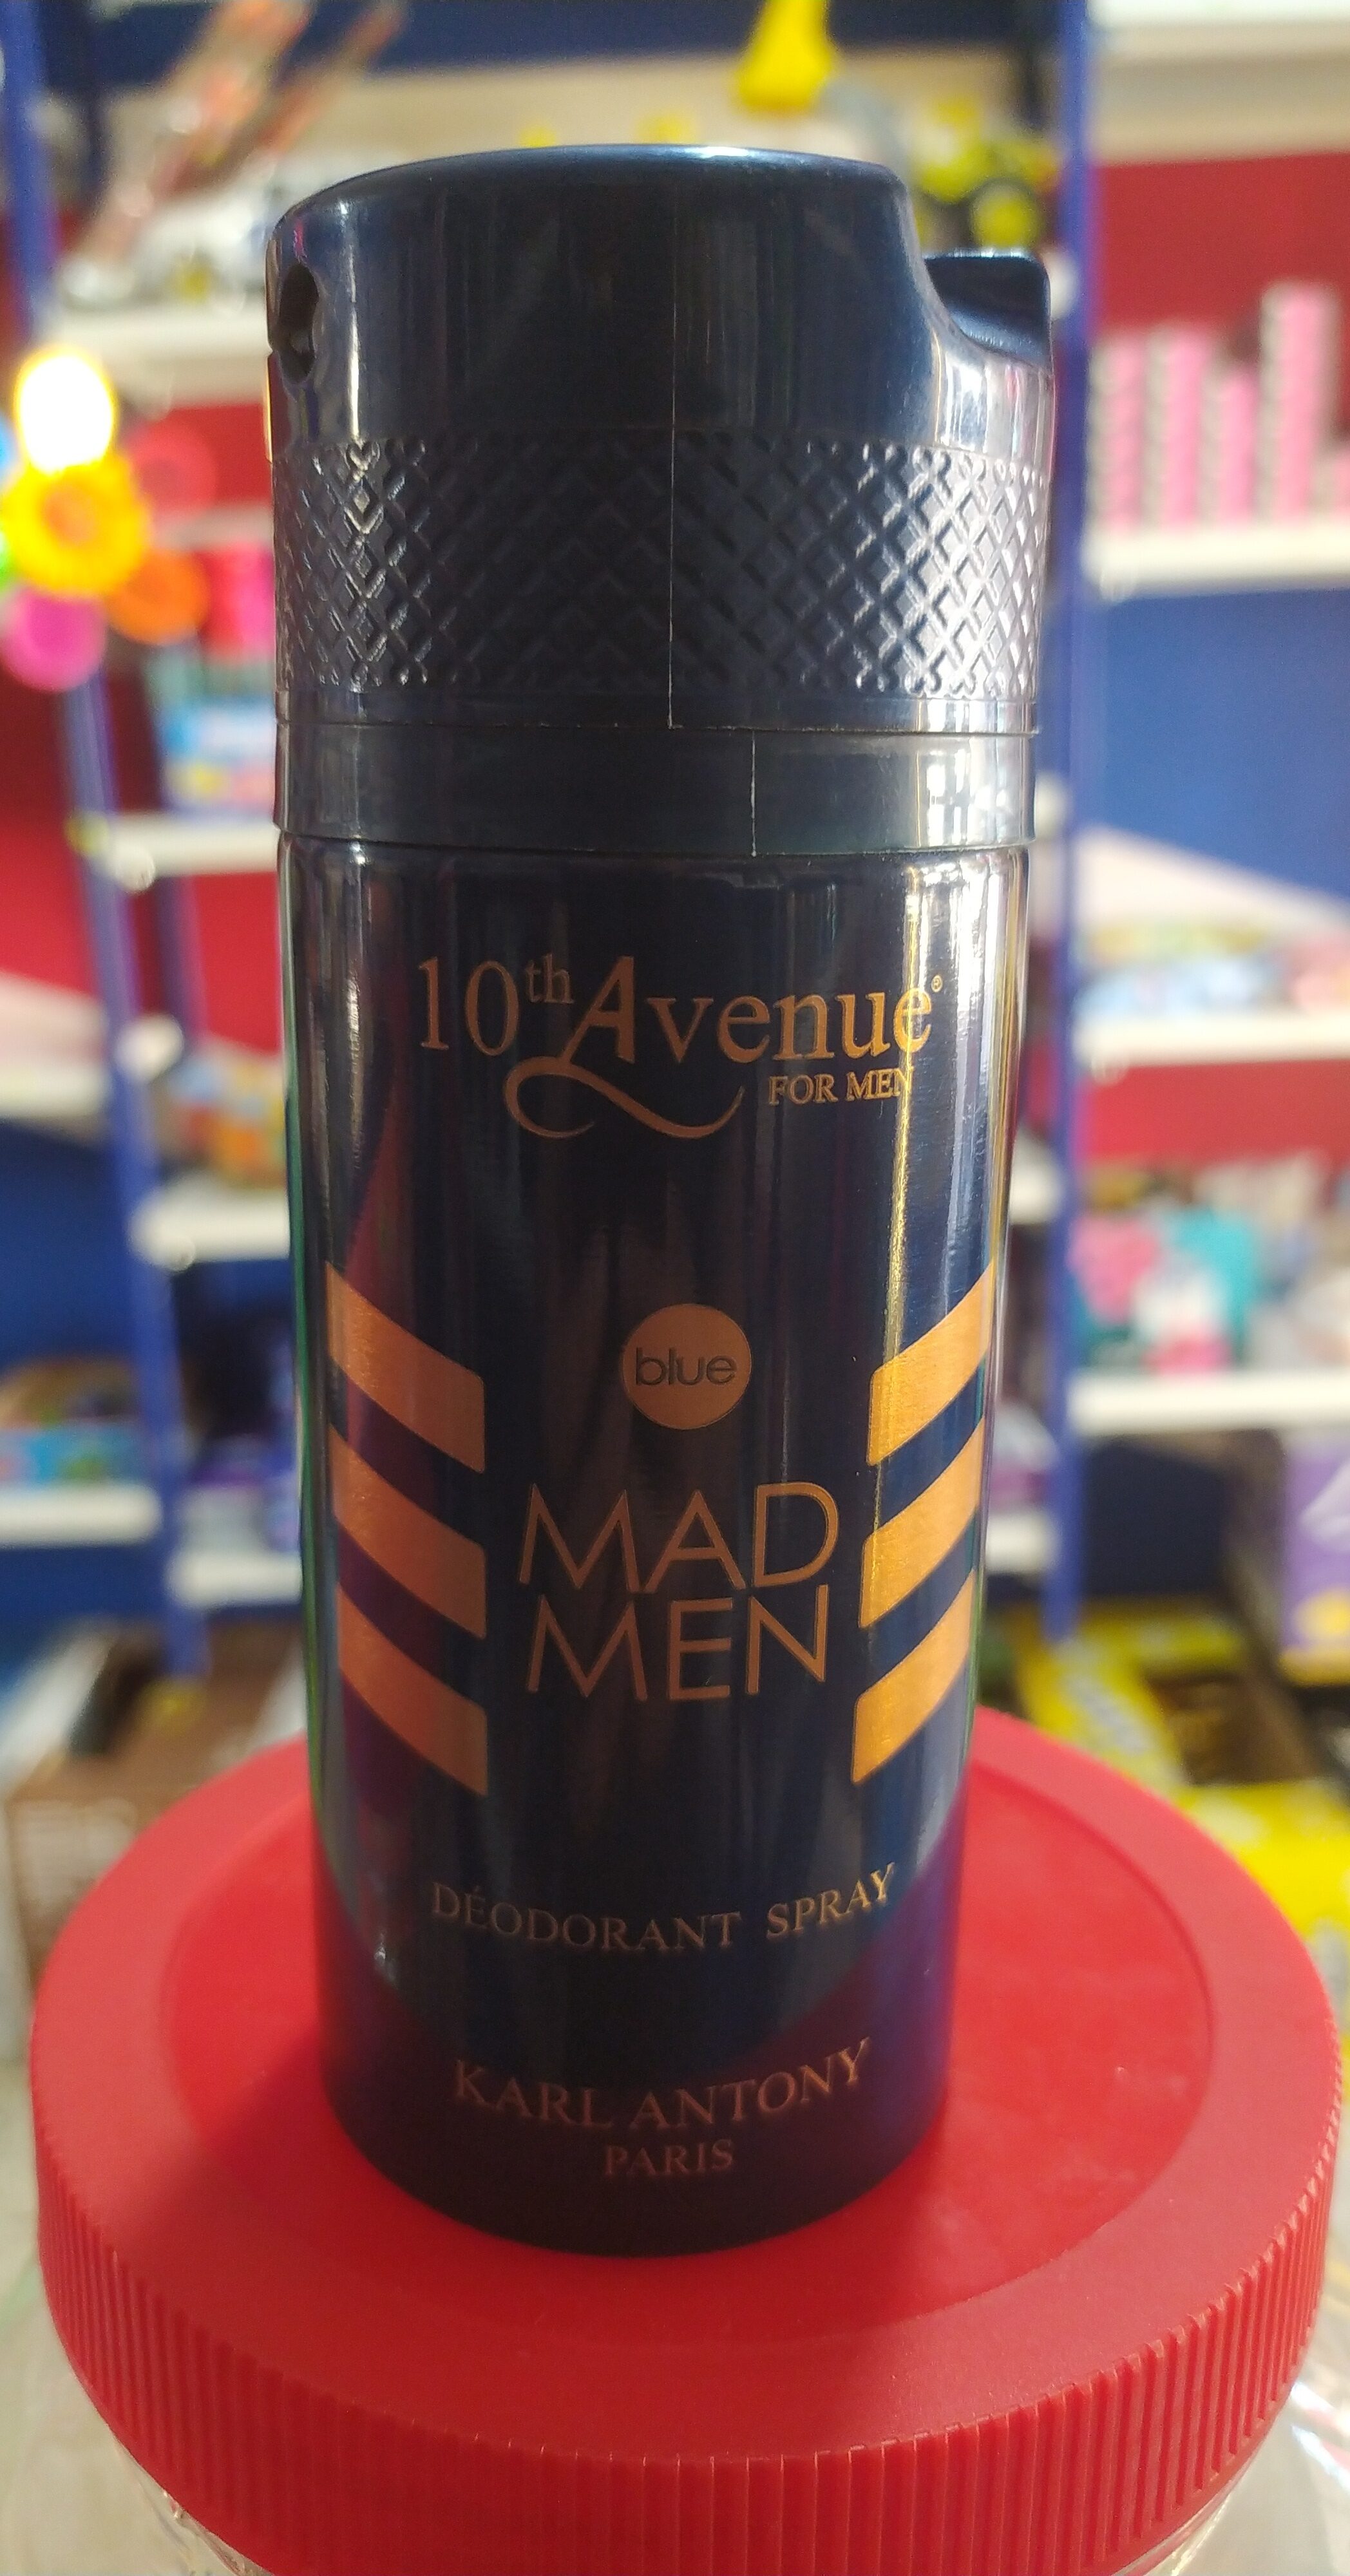 10th avenue Mad man - Tuote - en